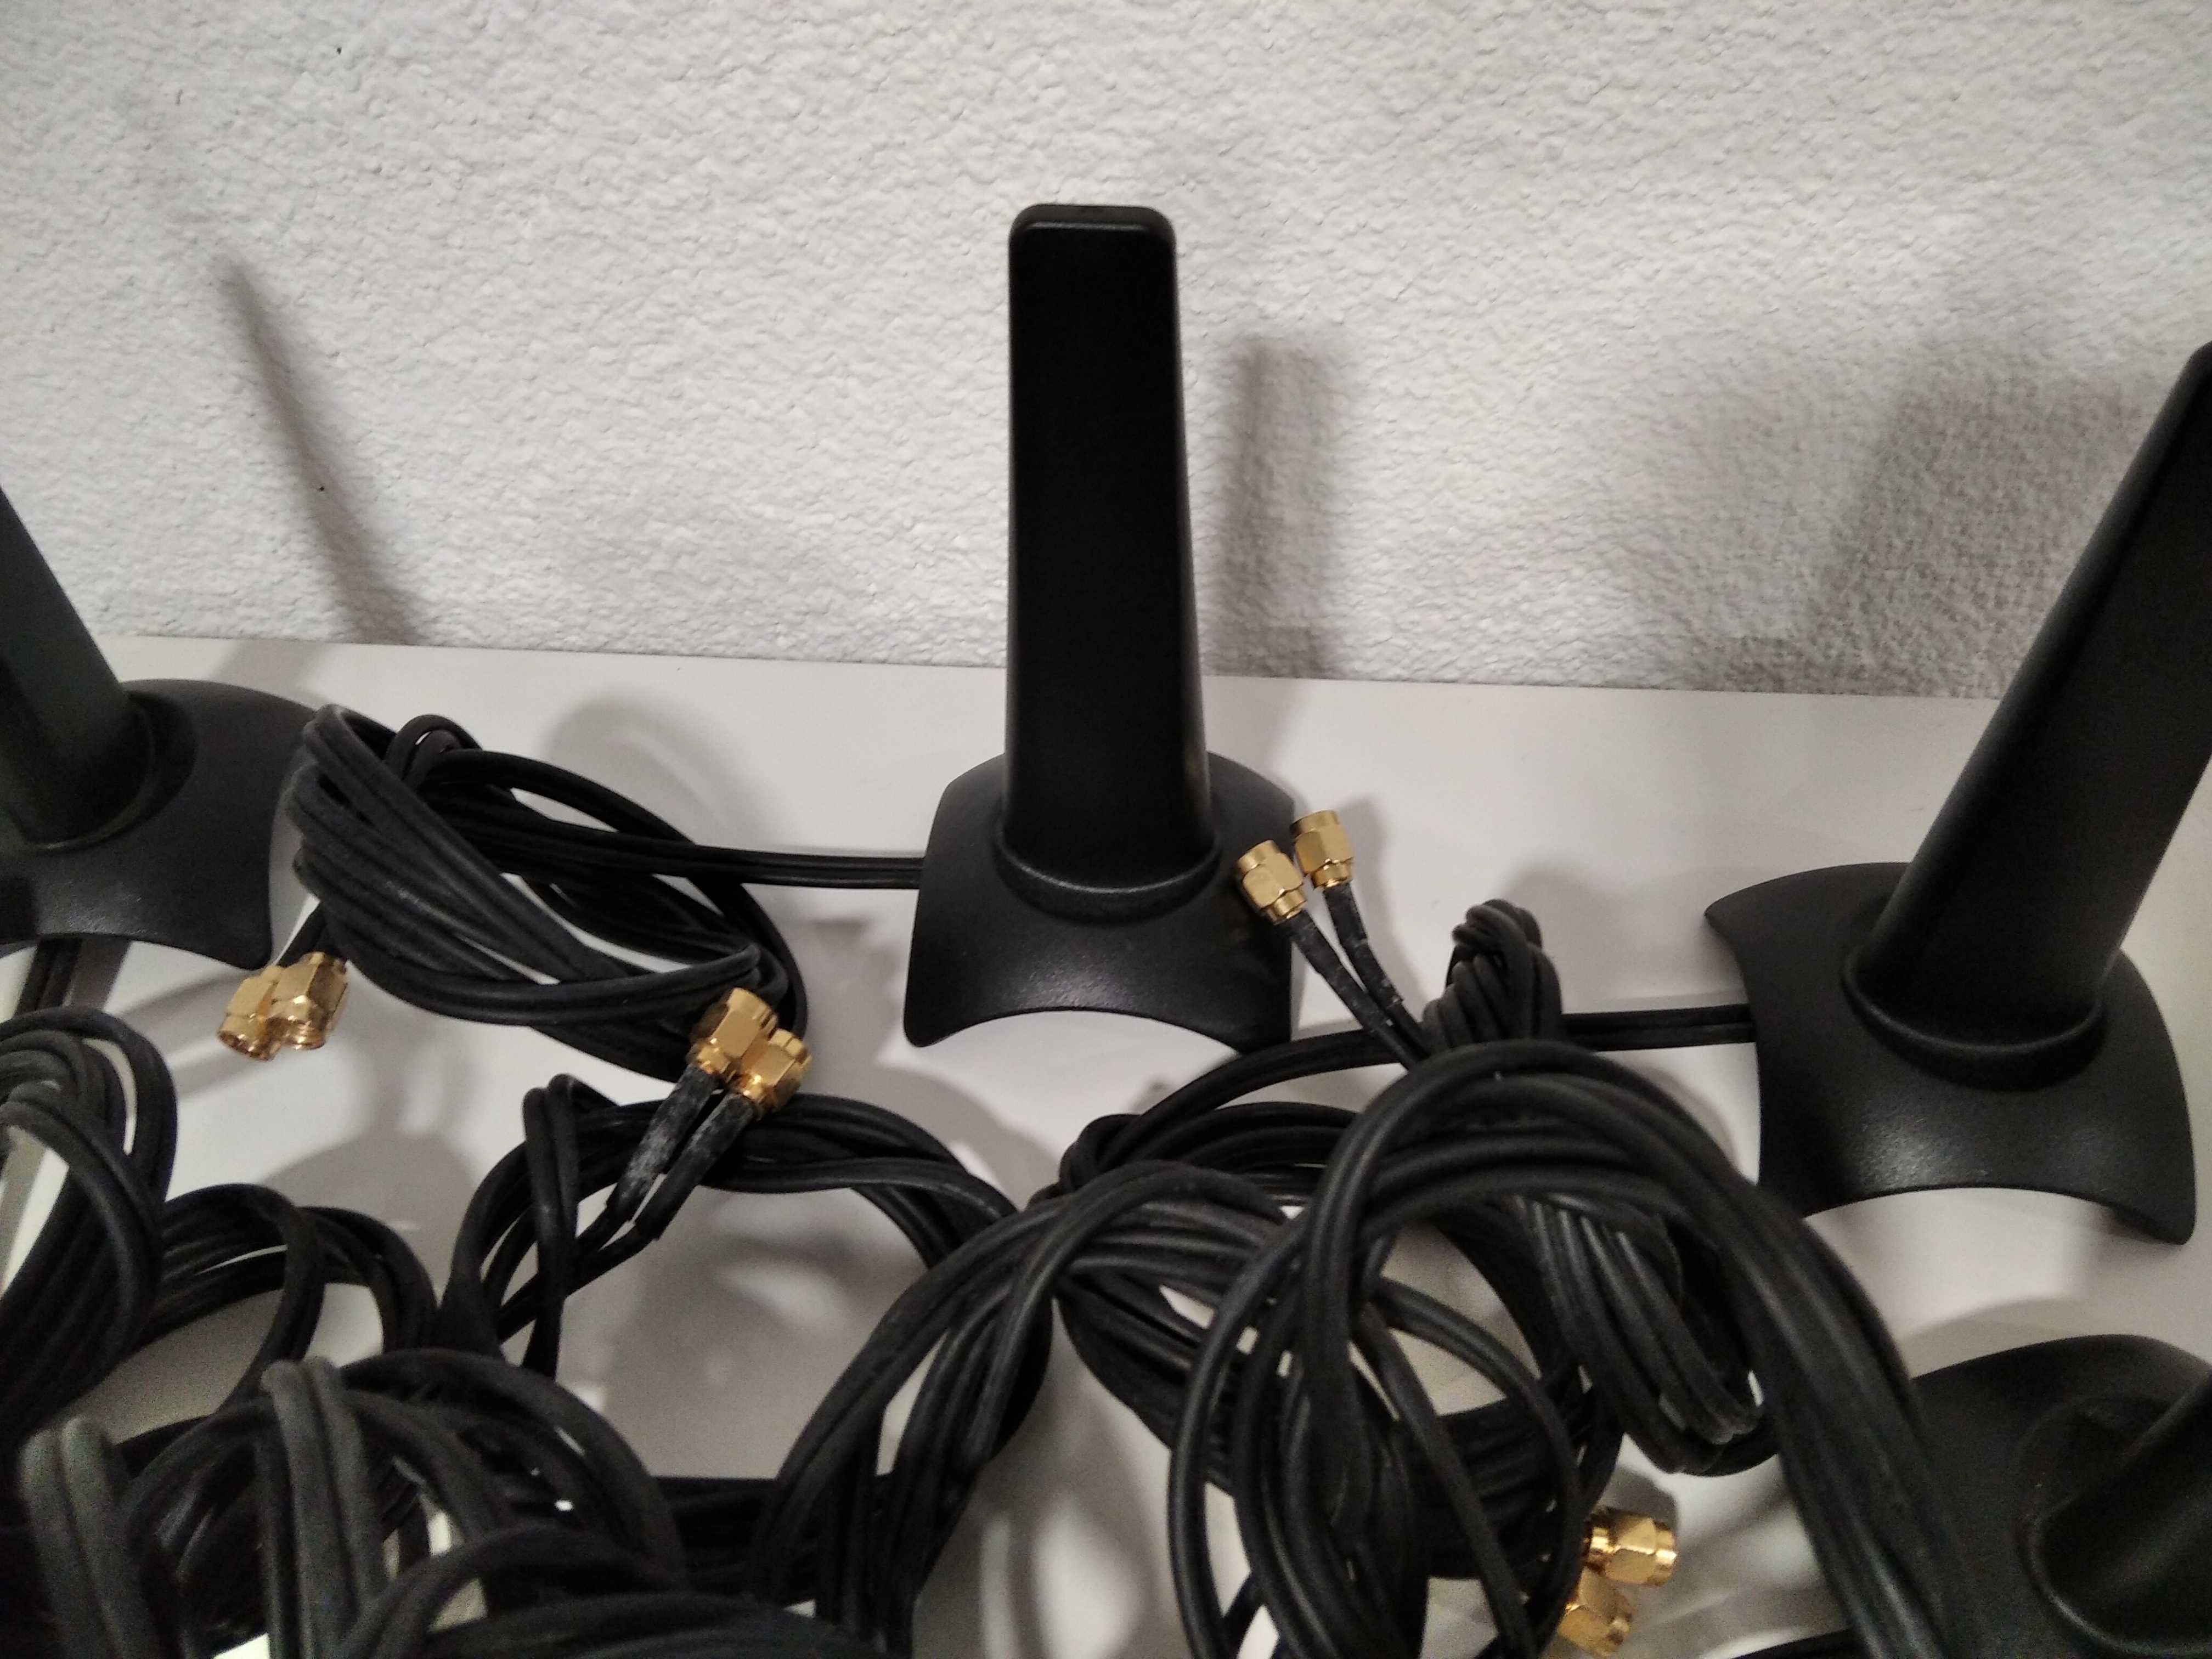 Antenas wifi com 2 ligações